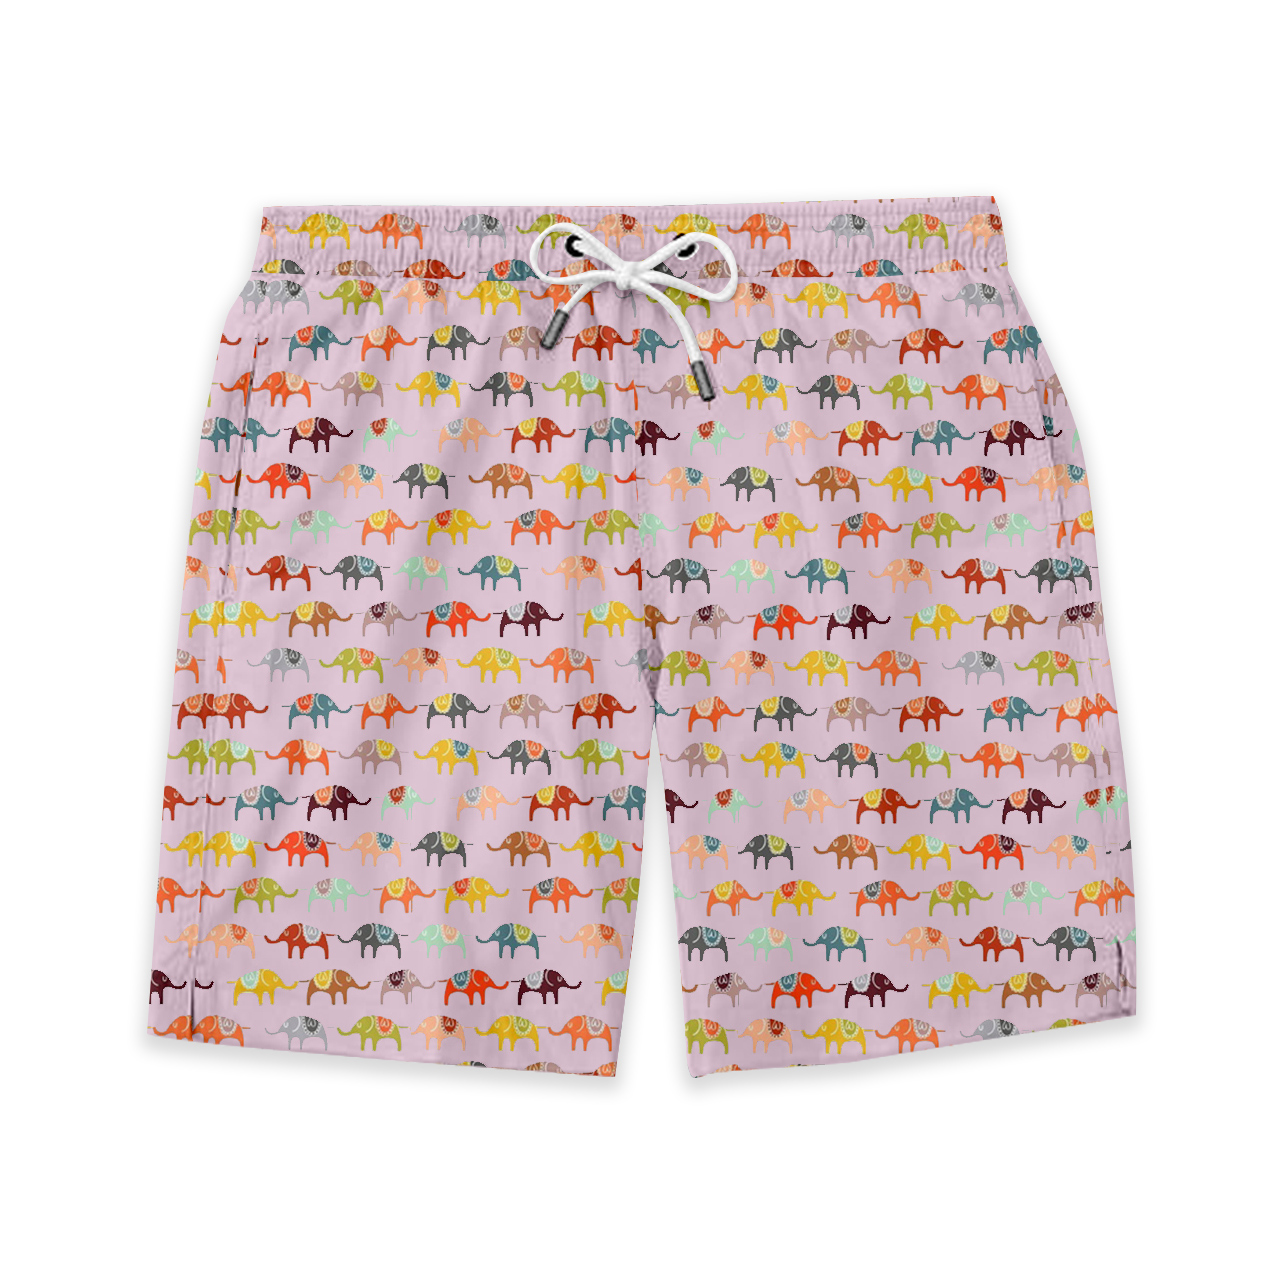 Colorful Elephant Kids Shorts